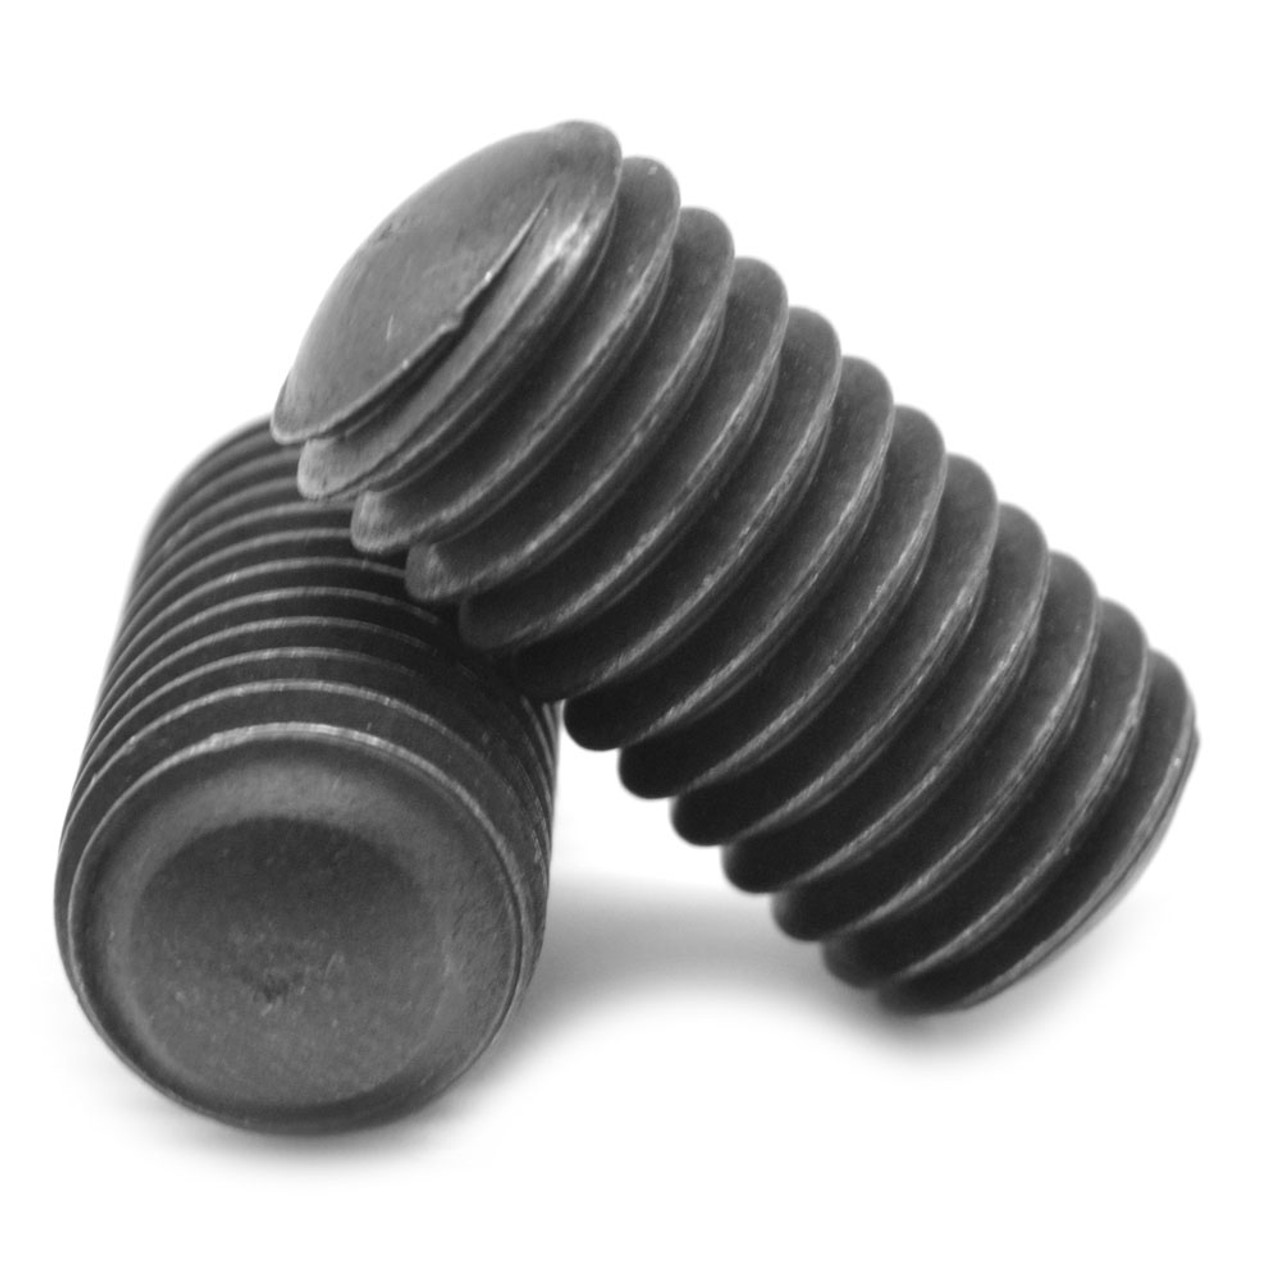 #4-40 x 3/16" Coarse Thread Socket Set Screw Oval Point Alloy Steel Black Oxide